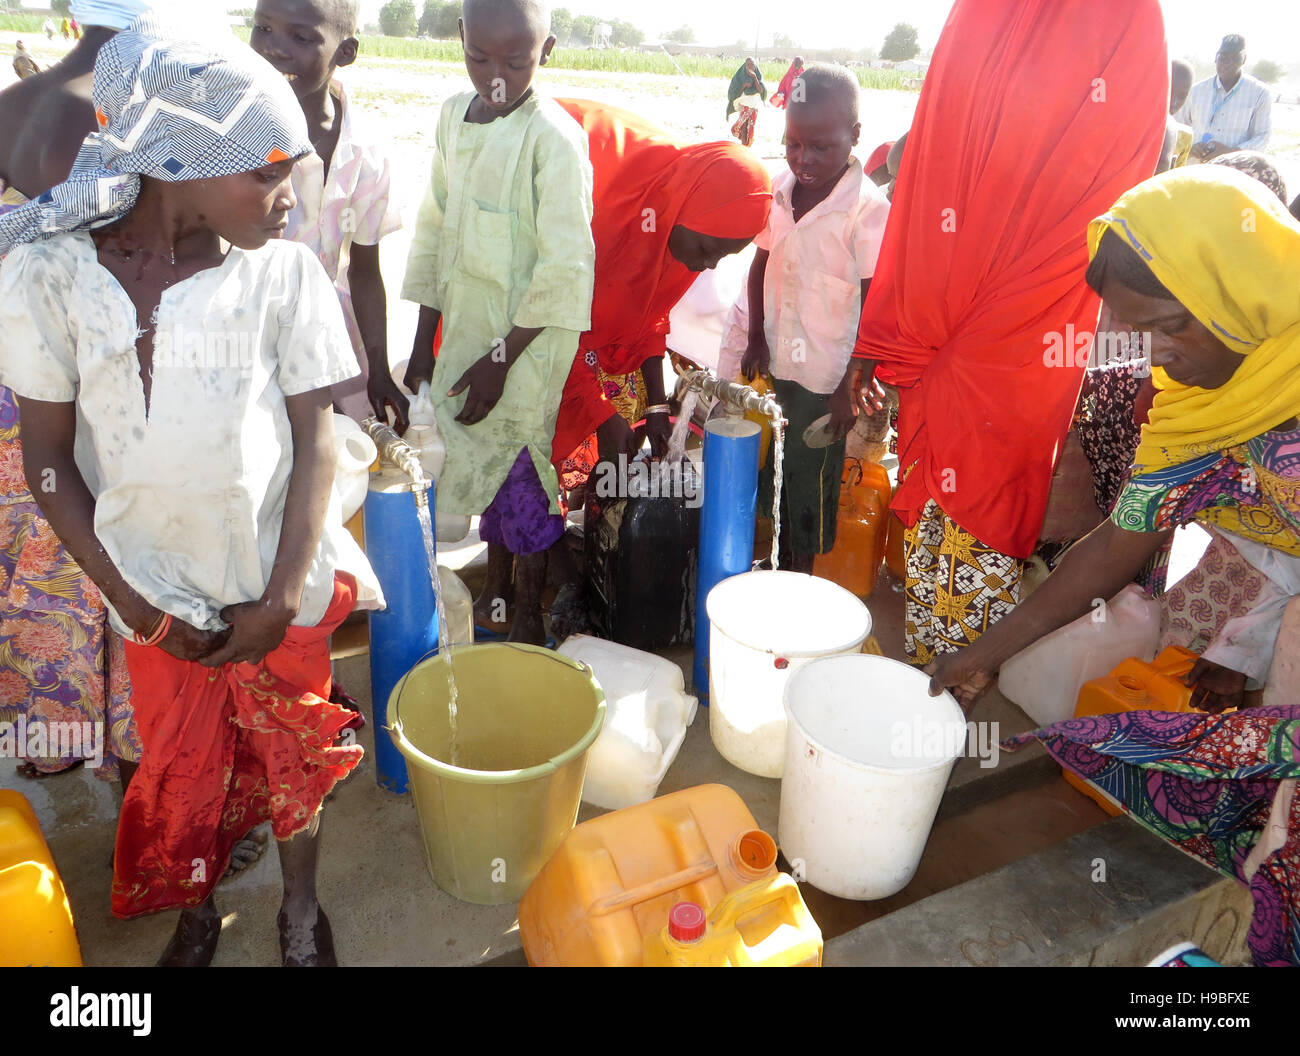 Maiduguri, Nigeria. 25 octobre, 2016. Frauen und Kinder apporter am 25.10.2016 von Wasser une Flüchtlingslager im Wasserstelle für durch die islamistische Terrorgruppe Vertriebene Boko Haram à Maiduguri, dans le Nigeria-Nord-Ost. (Zu dpa "Gerettet, aber nicht gewollt : Das le destin d'der Opfer-Boko-Haram" vom 21.11.2016) Sam Olukoya/dpa Foto : Sam Olukoya/apd /afp/Alamy Live News Banque D'Images